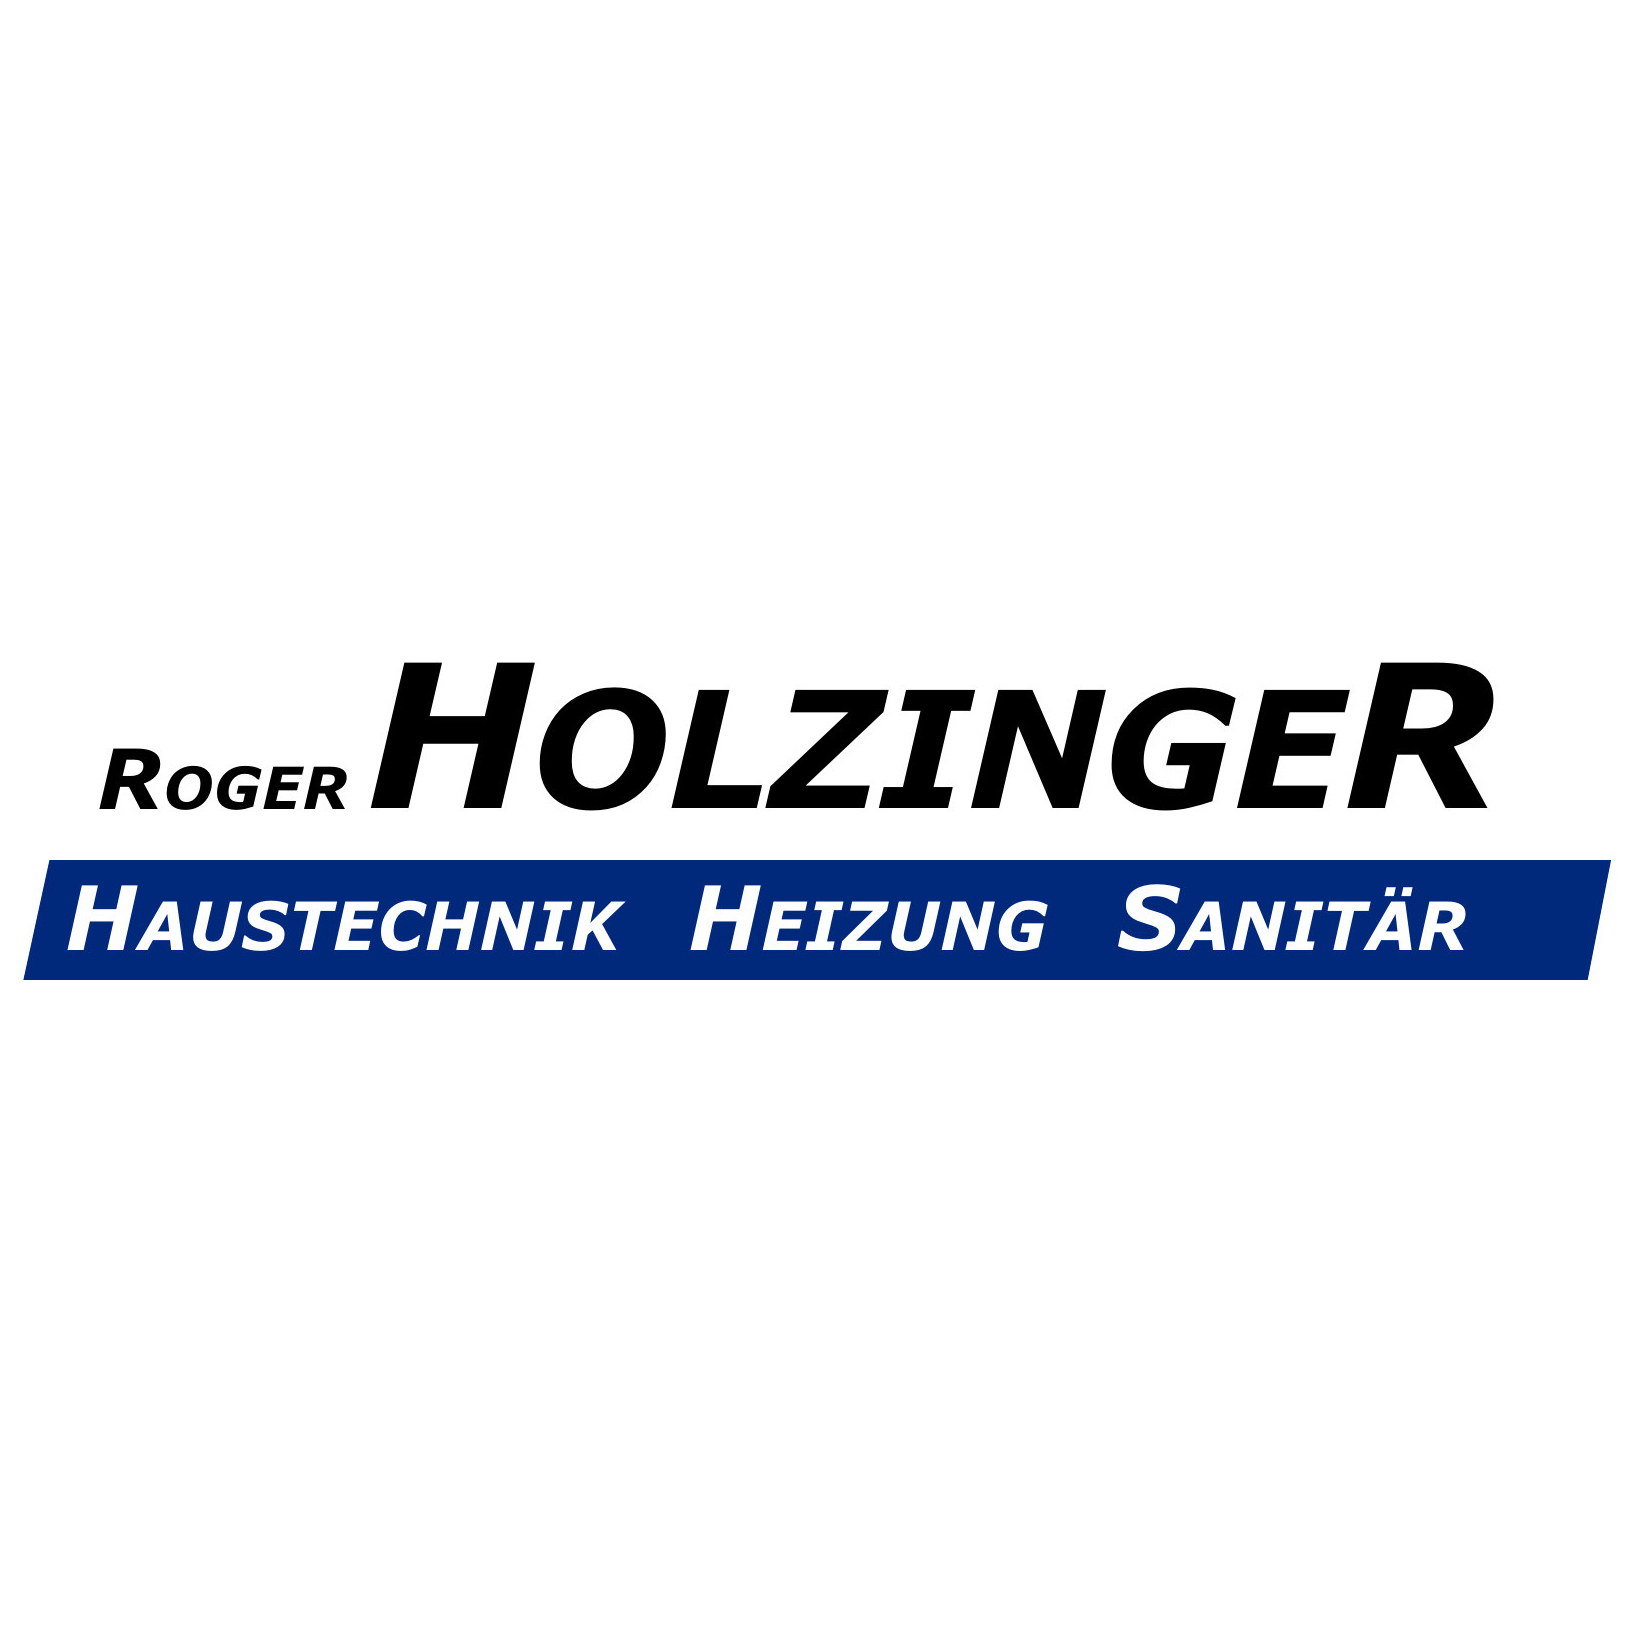 Roger Holzinger Haustechnik Logo